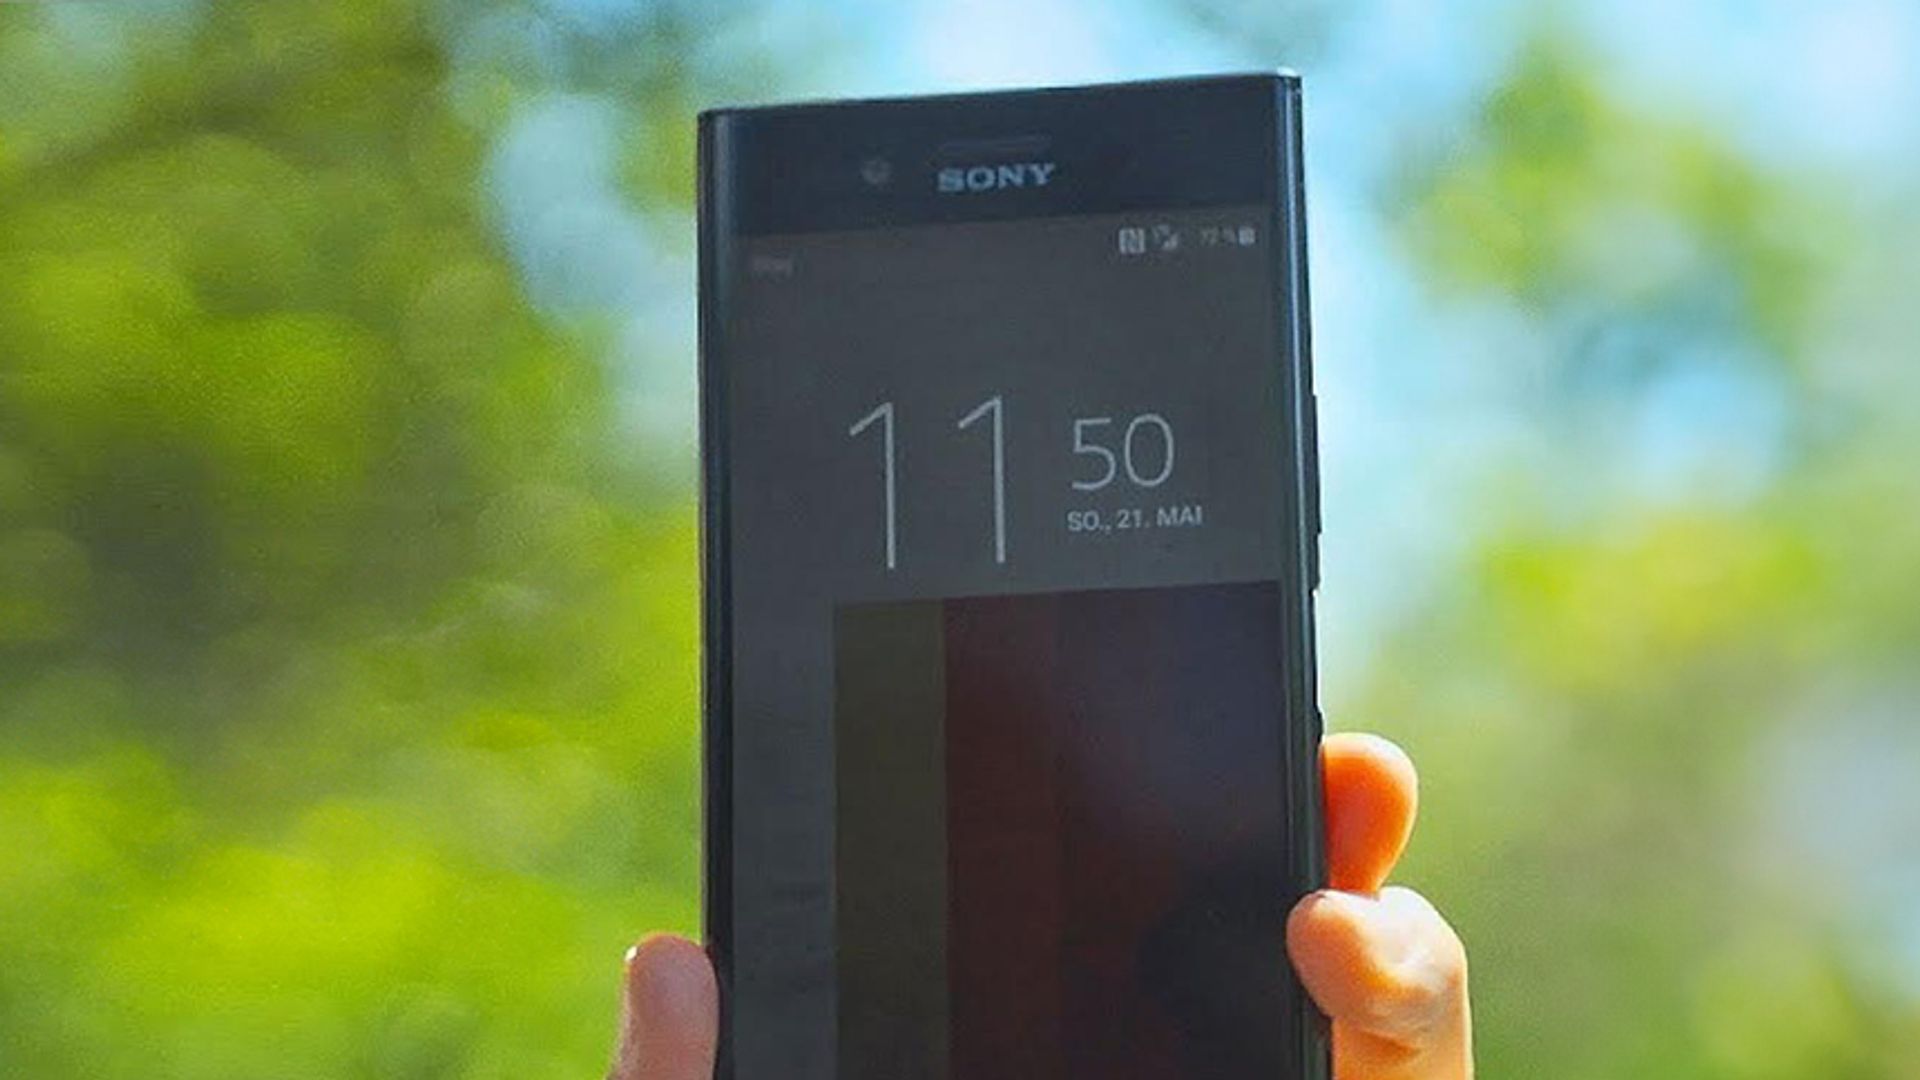 960 Bilder/Sekunde mit dem HANDY aufnehmen?! - Sony Xperia XZ Premium - Review